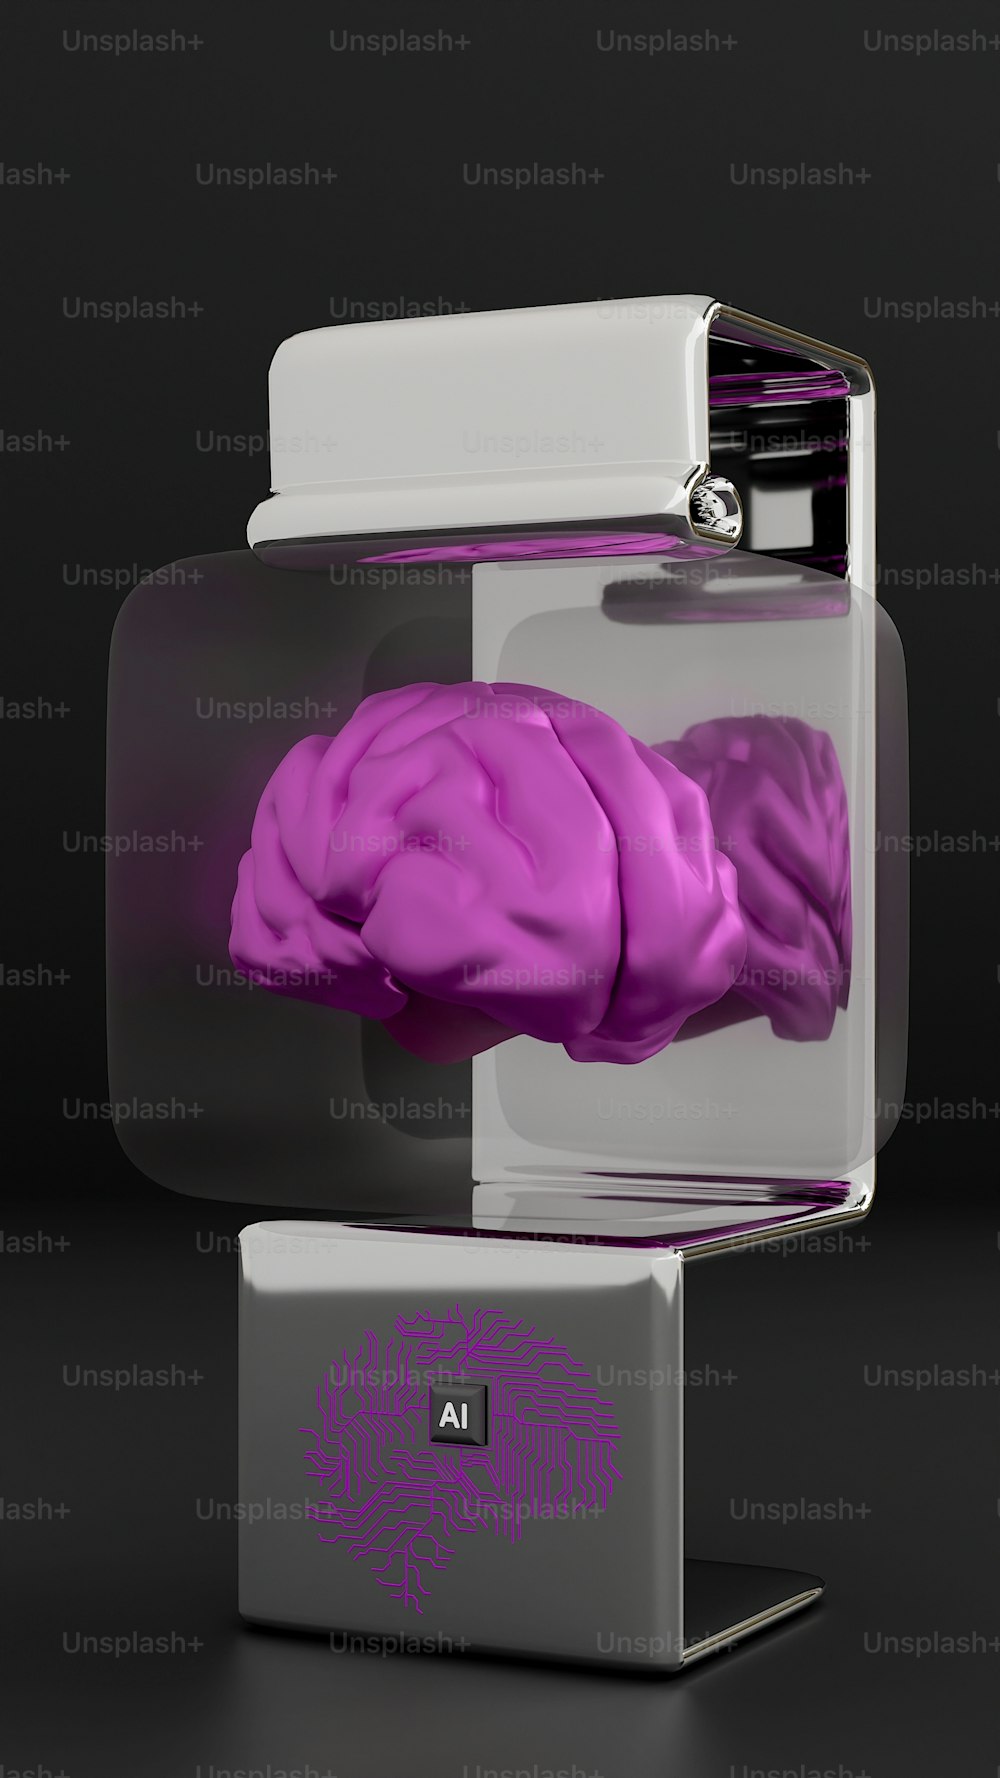 Um modelo roxo de um cérebro humano em uma caixa de vidro